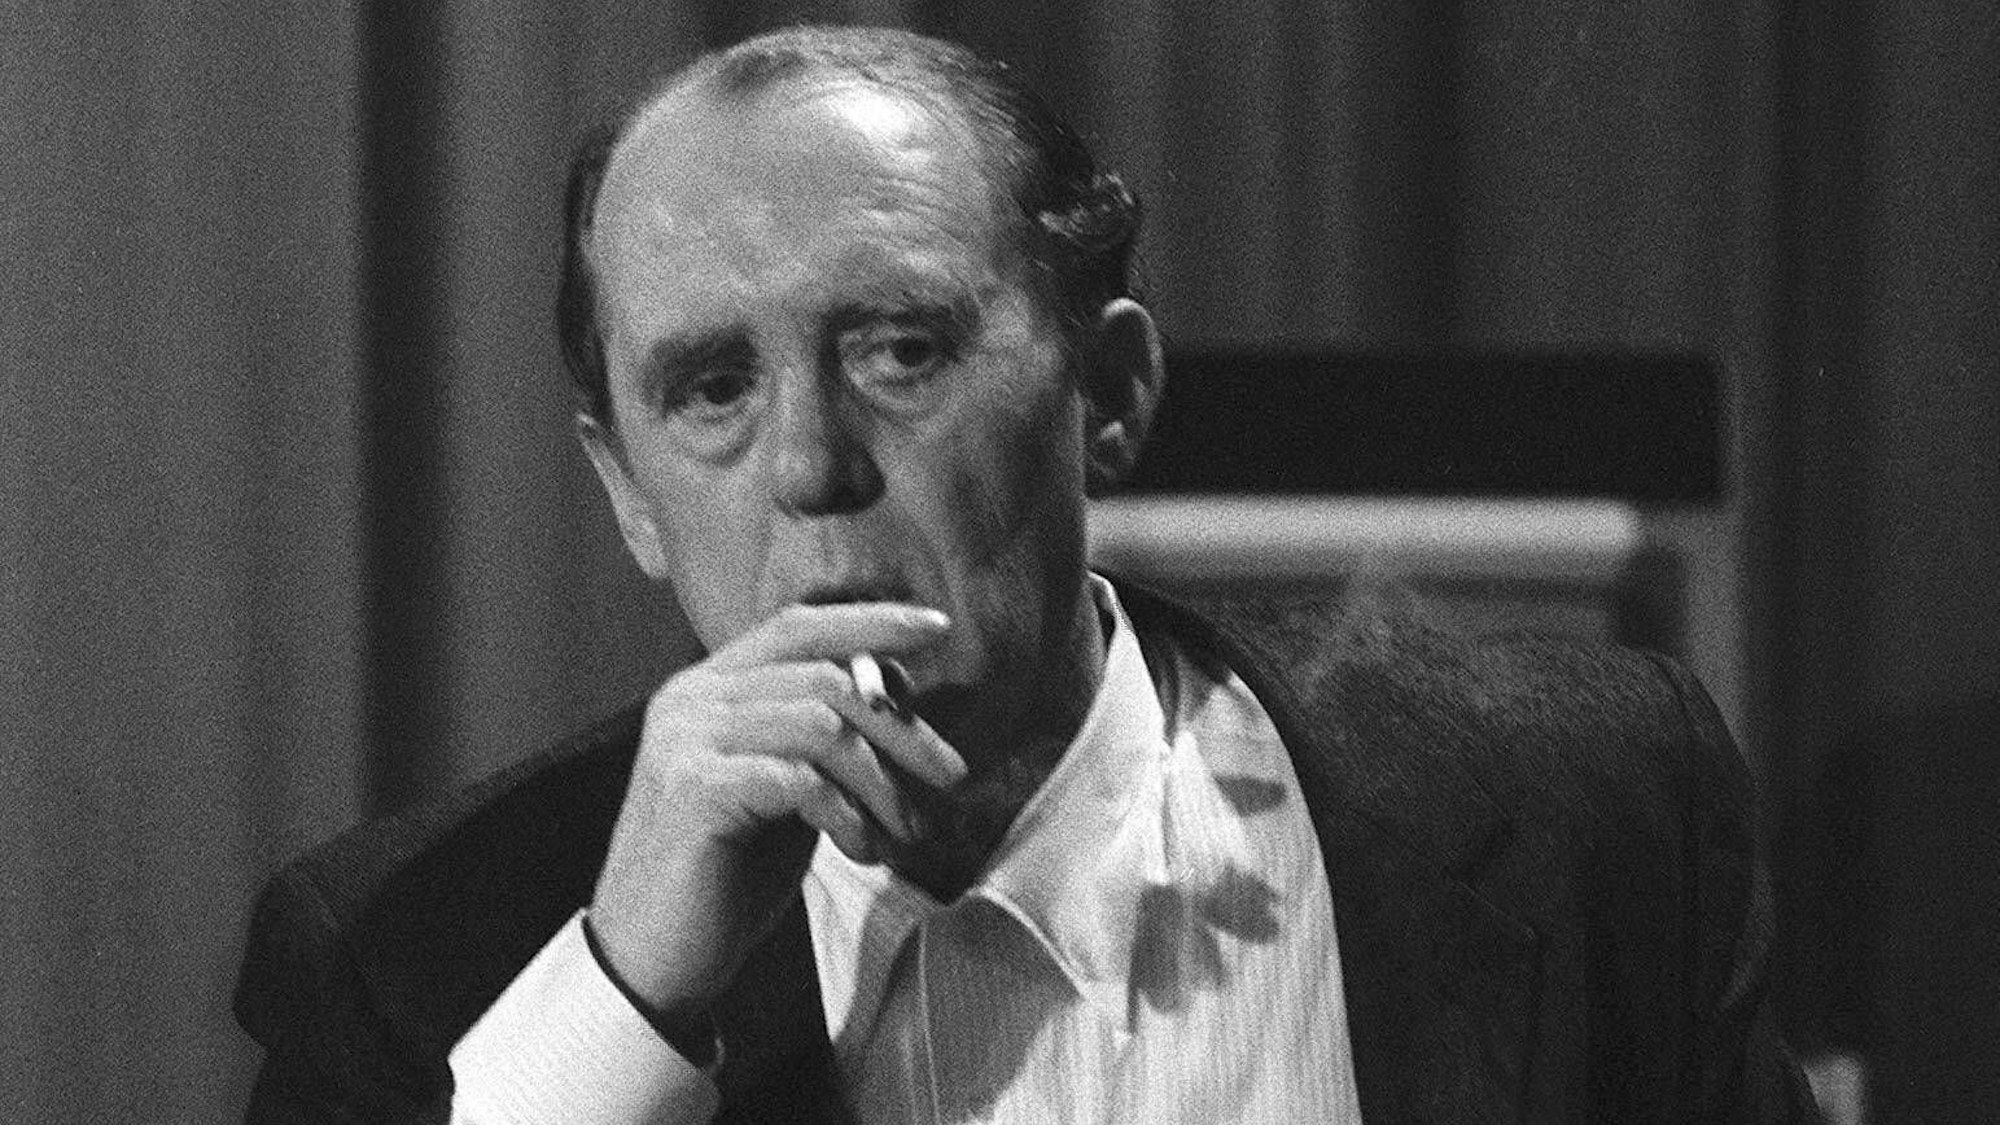 Schriftsteller Heinrich Böll rauchend mit einer Zigarette in der Hand während einer Tagung des Schriftstellerverbandes P.E.N.